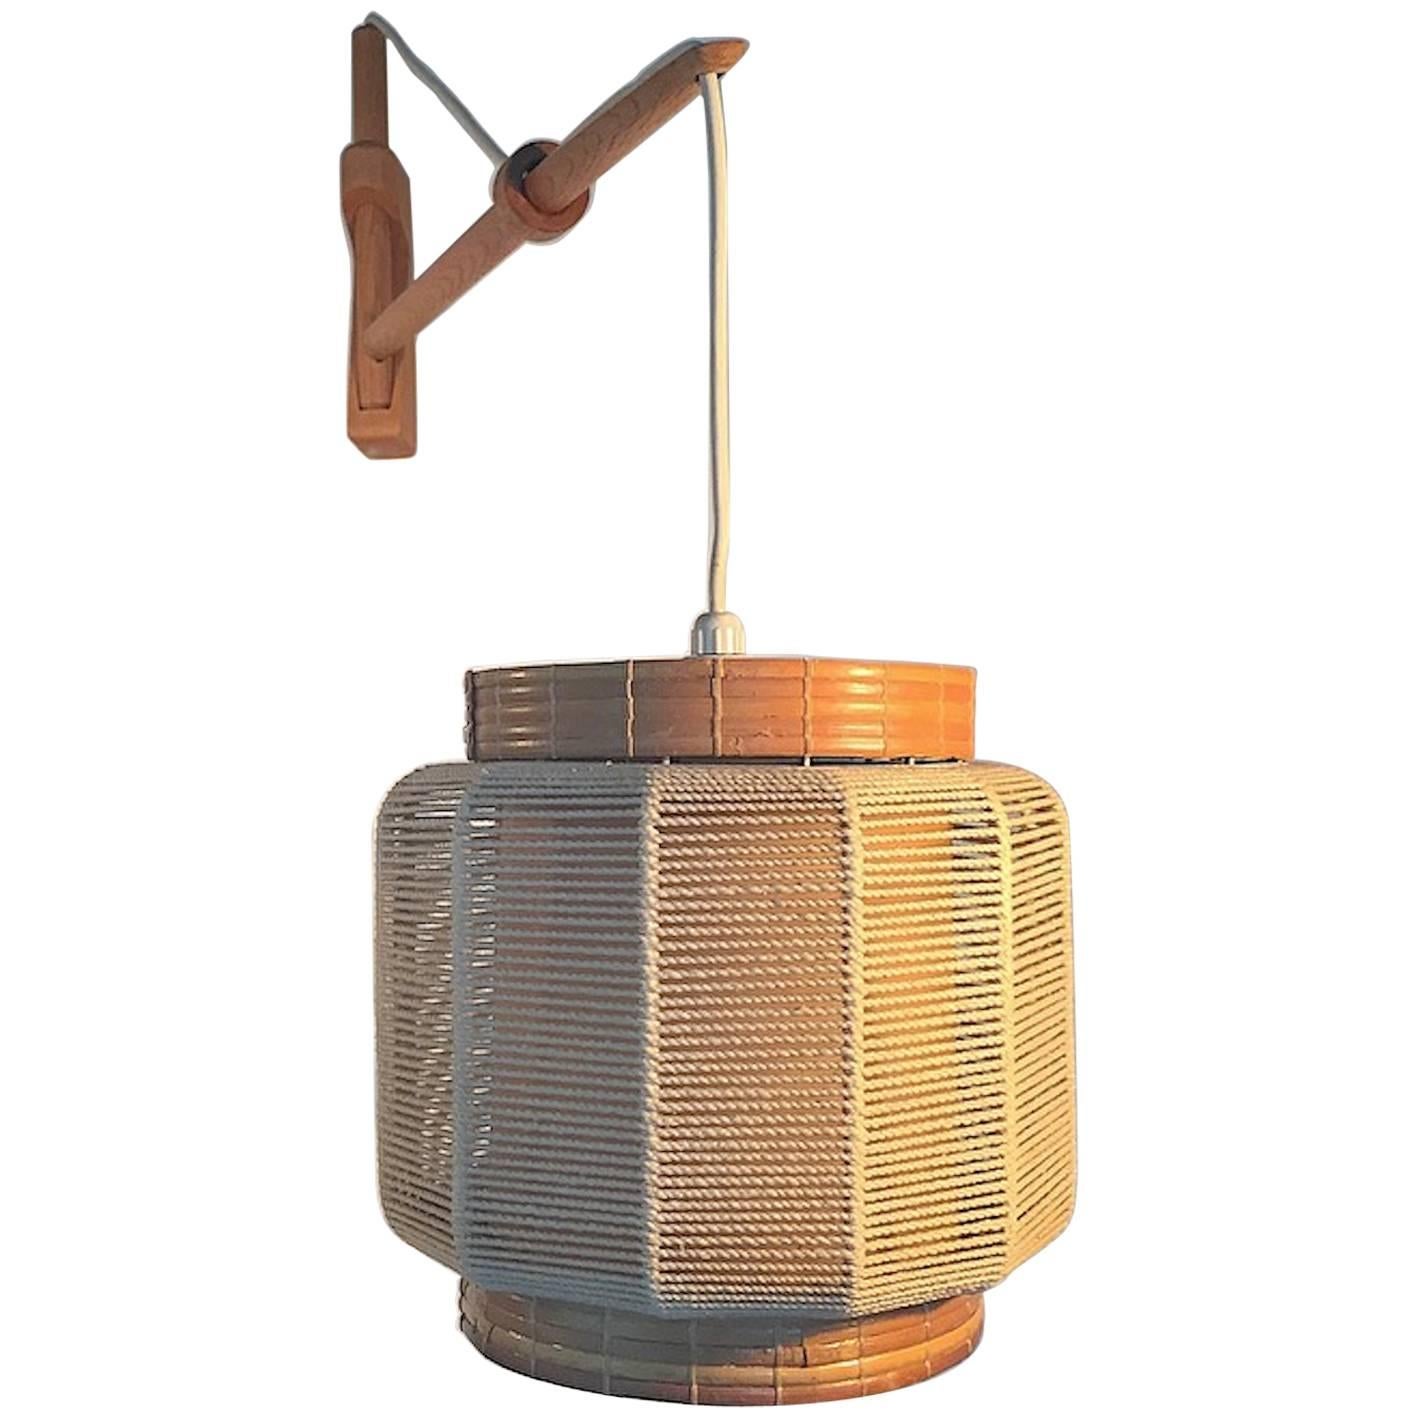 Wall Lamp in Oak, Twine and Wicker Designed by Kaare Klint